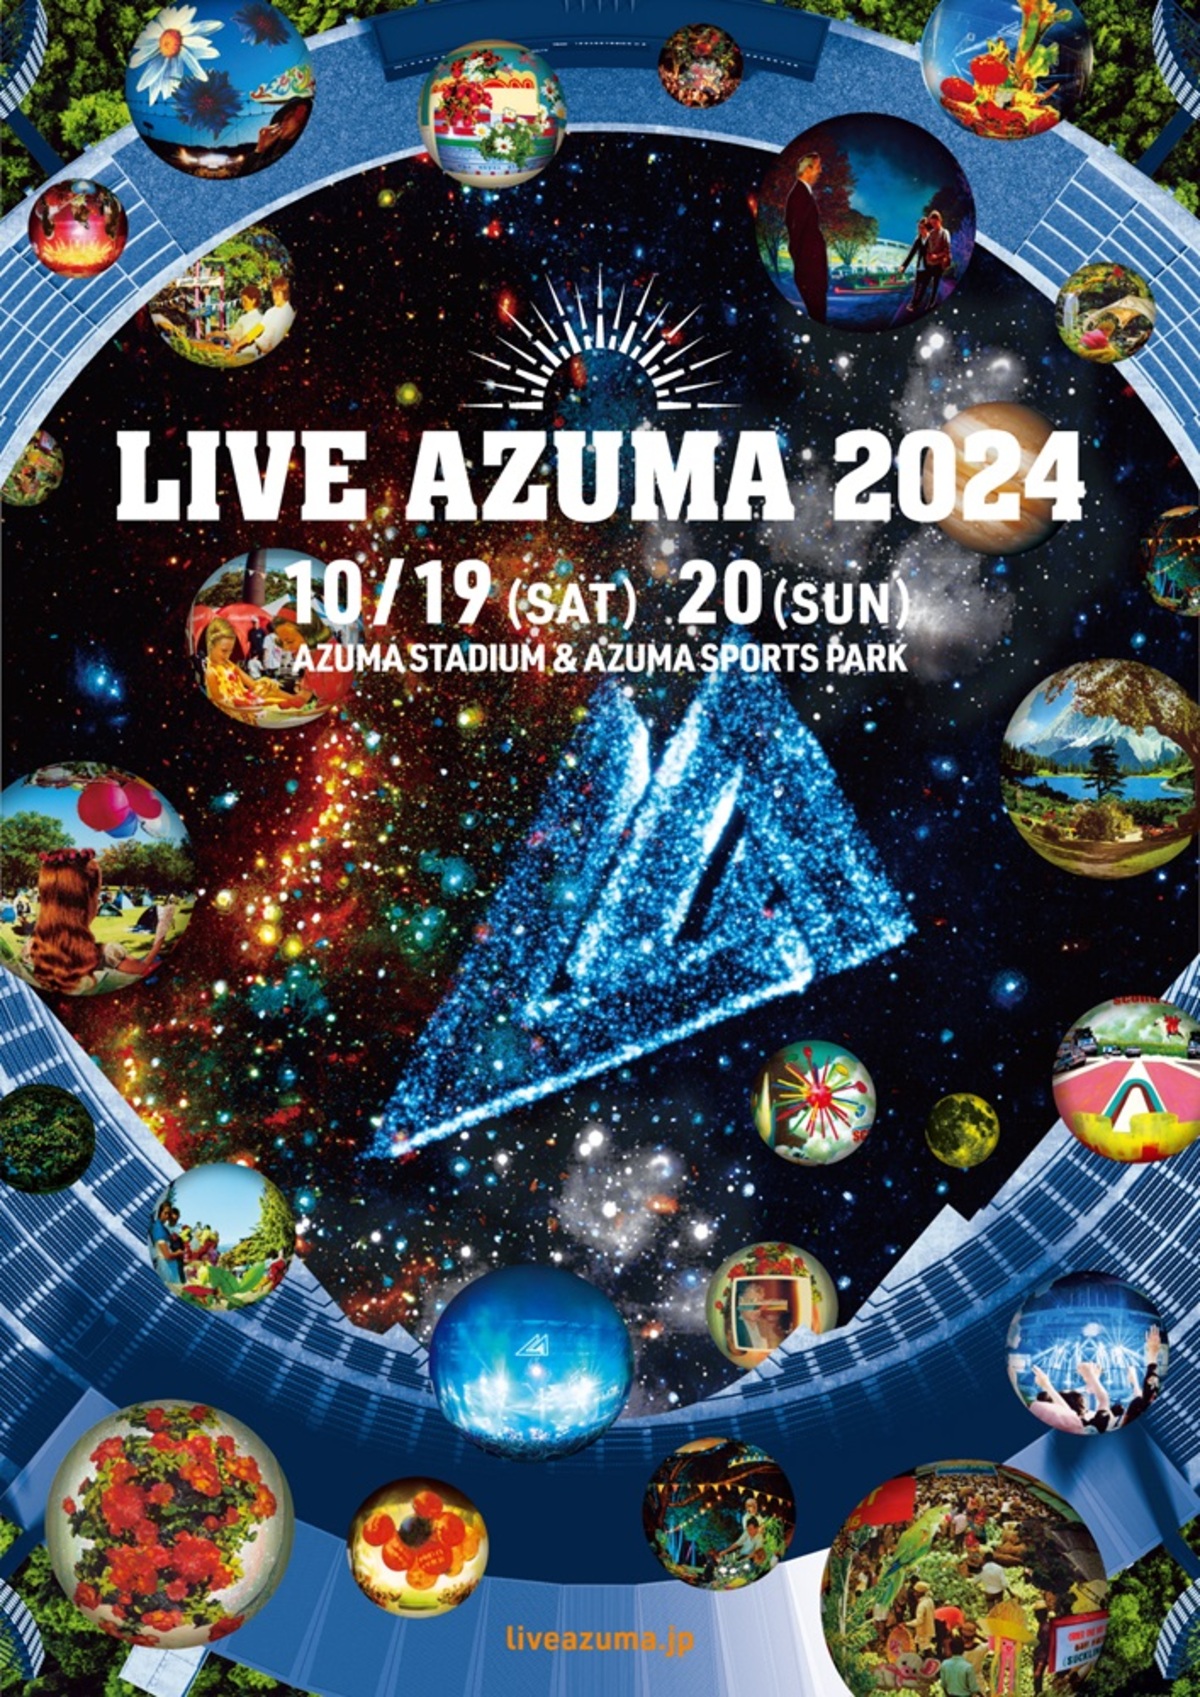 LIVE AZUMA 2日通し券 2枚 - 音楽